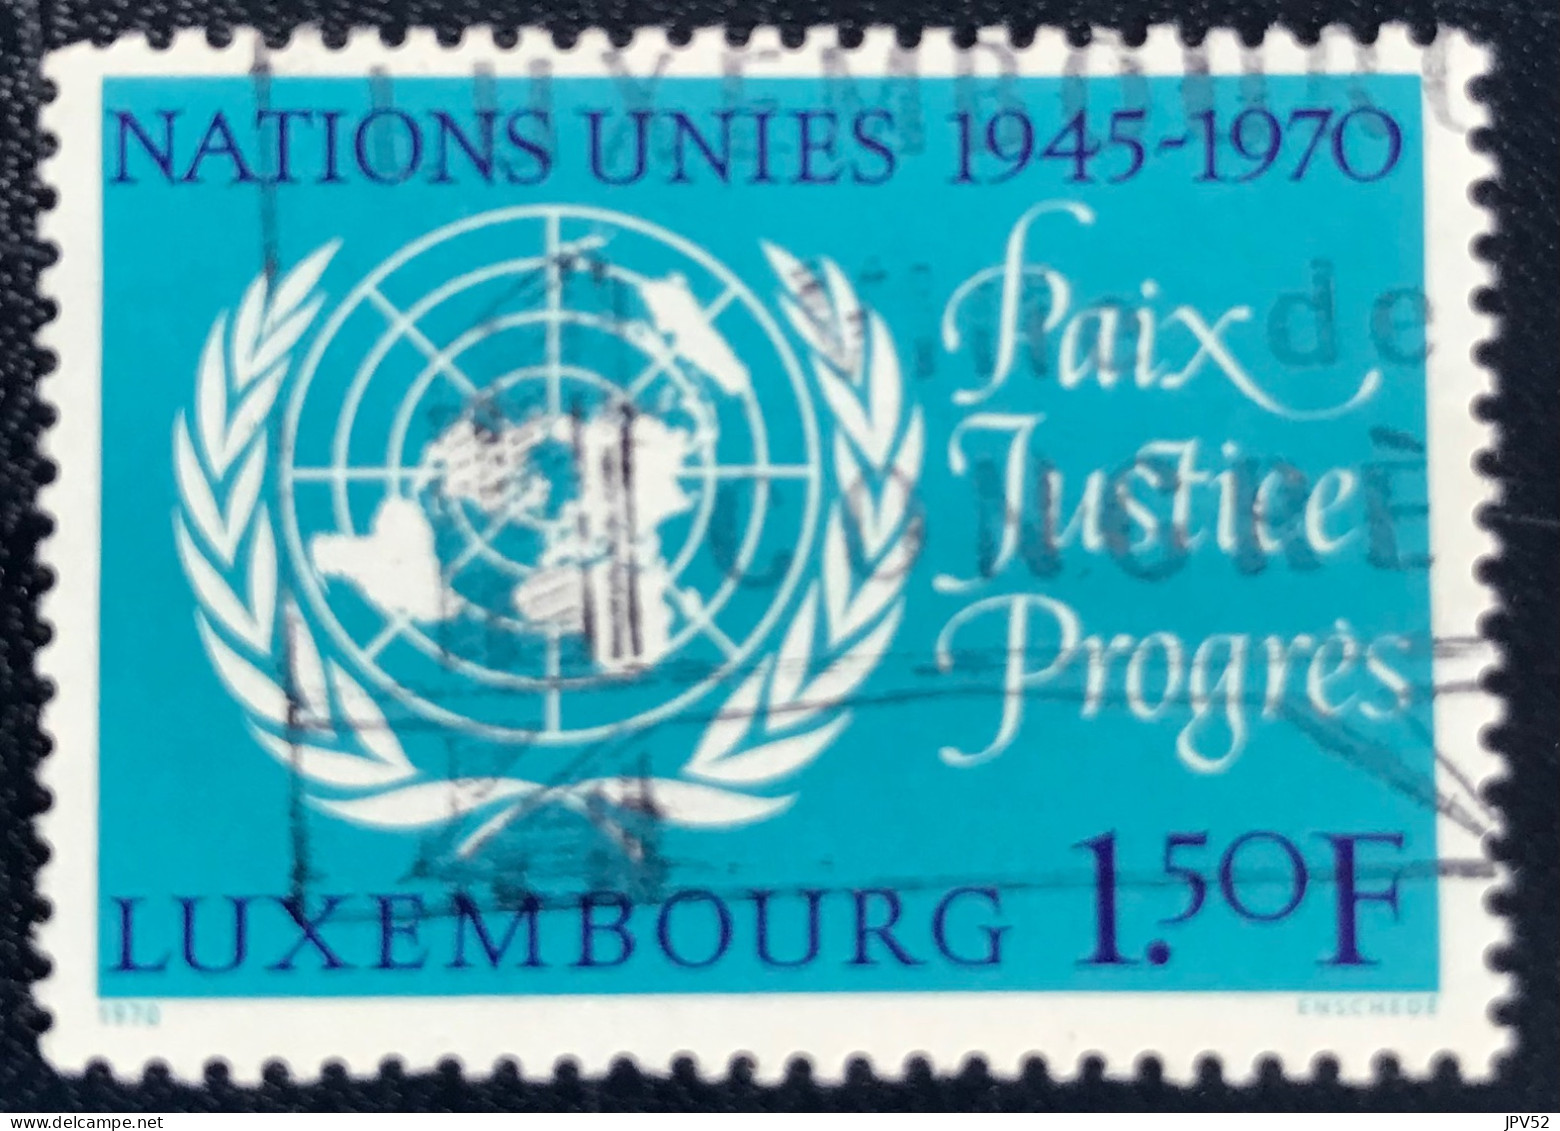 Luxembourg - Luxemburg - C18/32 - 1970 - (°)used - Michel 813 - Embleem VN - Oblitérés